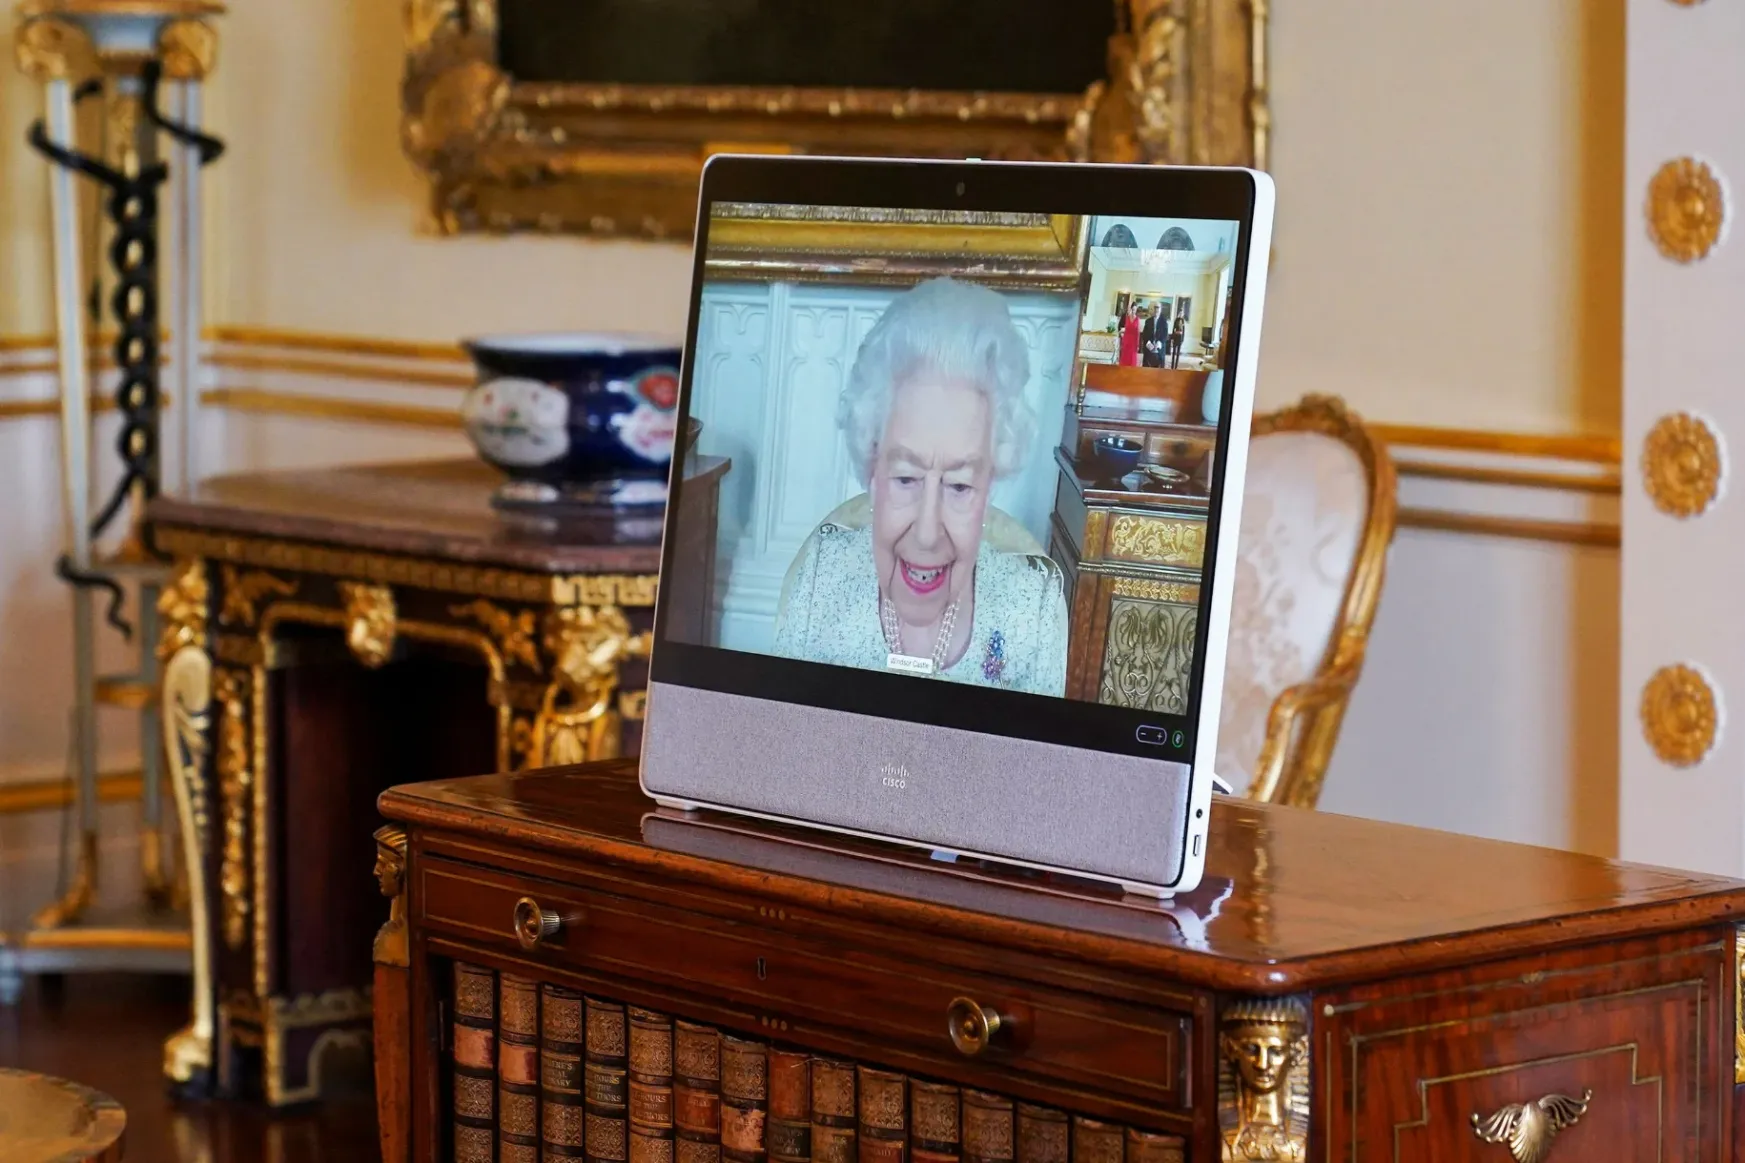 A királynő a monitoron is királynő?